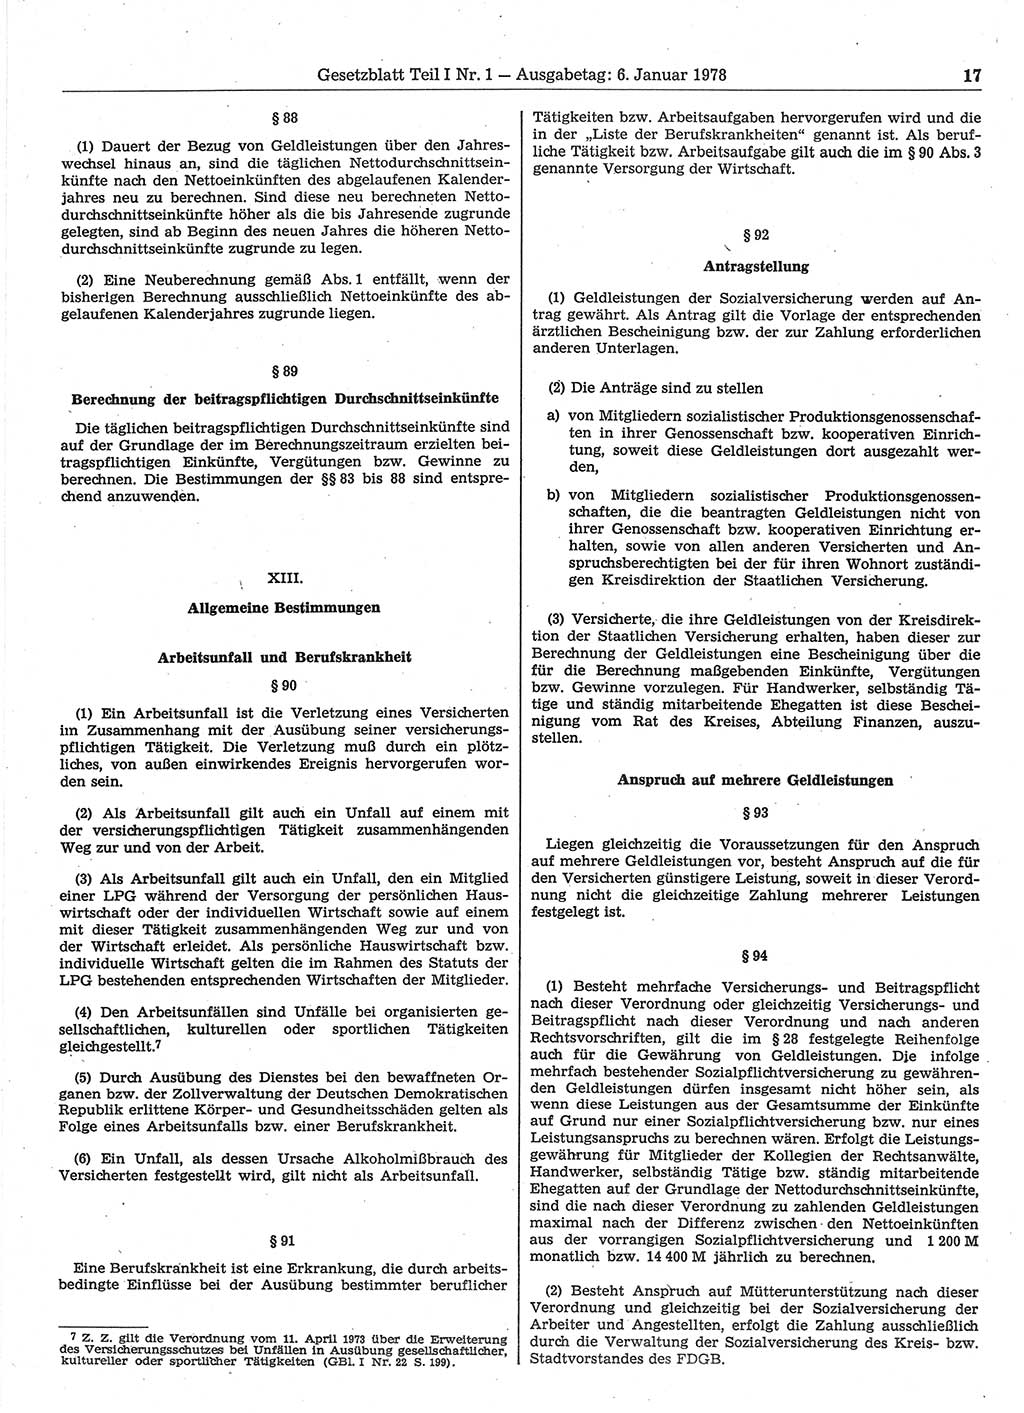 Gesetzblatt (GBl.) der Deutschen Demokratischen Republik (DDR) Teil Ⅰ 1978, Seite 17 (GBl. DDR Ⅰ 1978, S. 17)